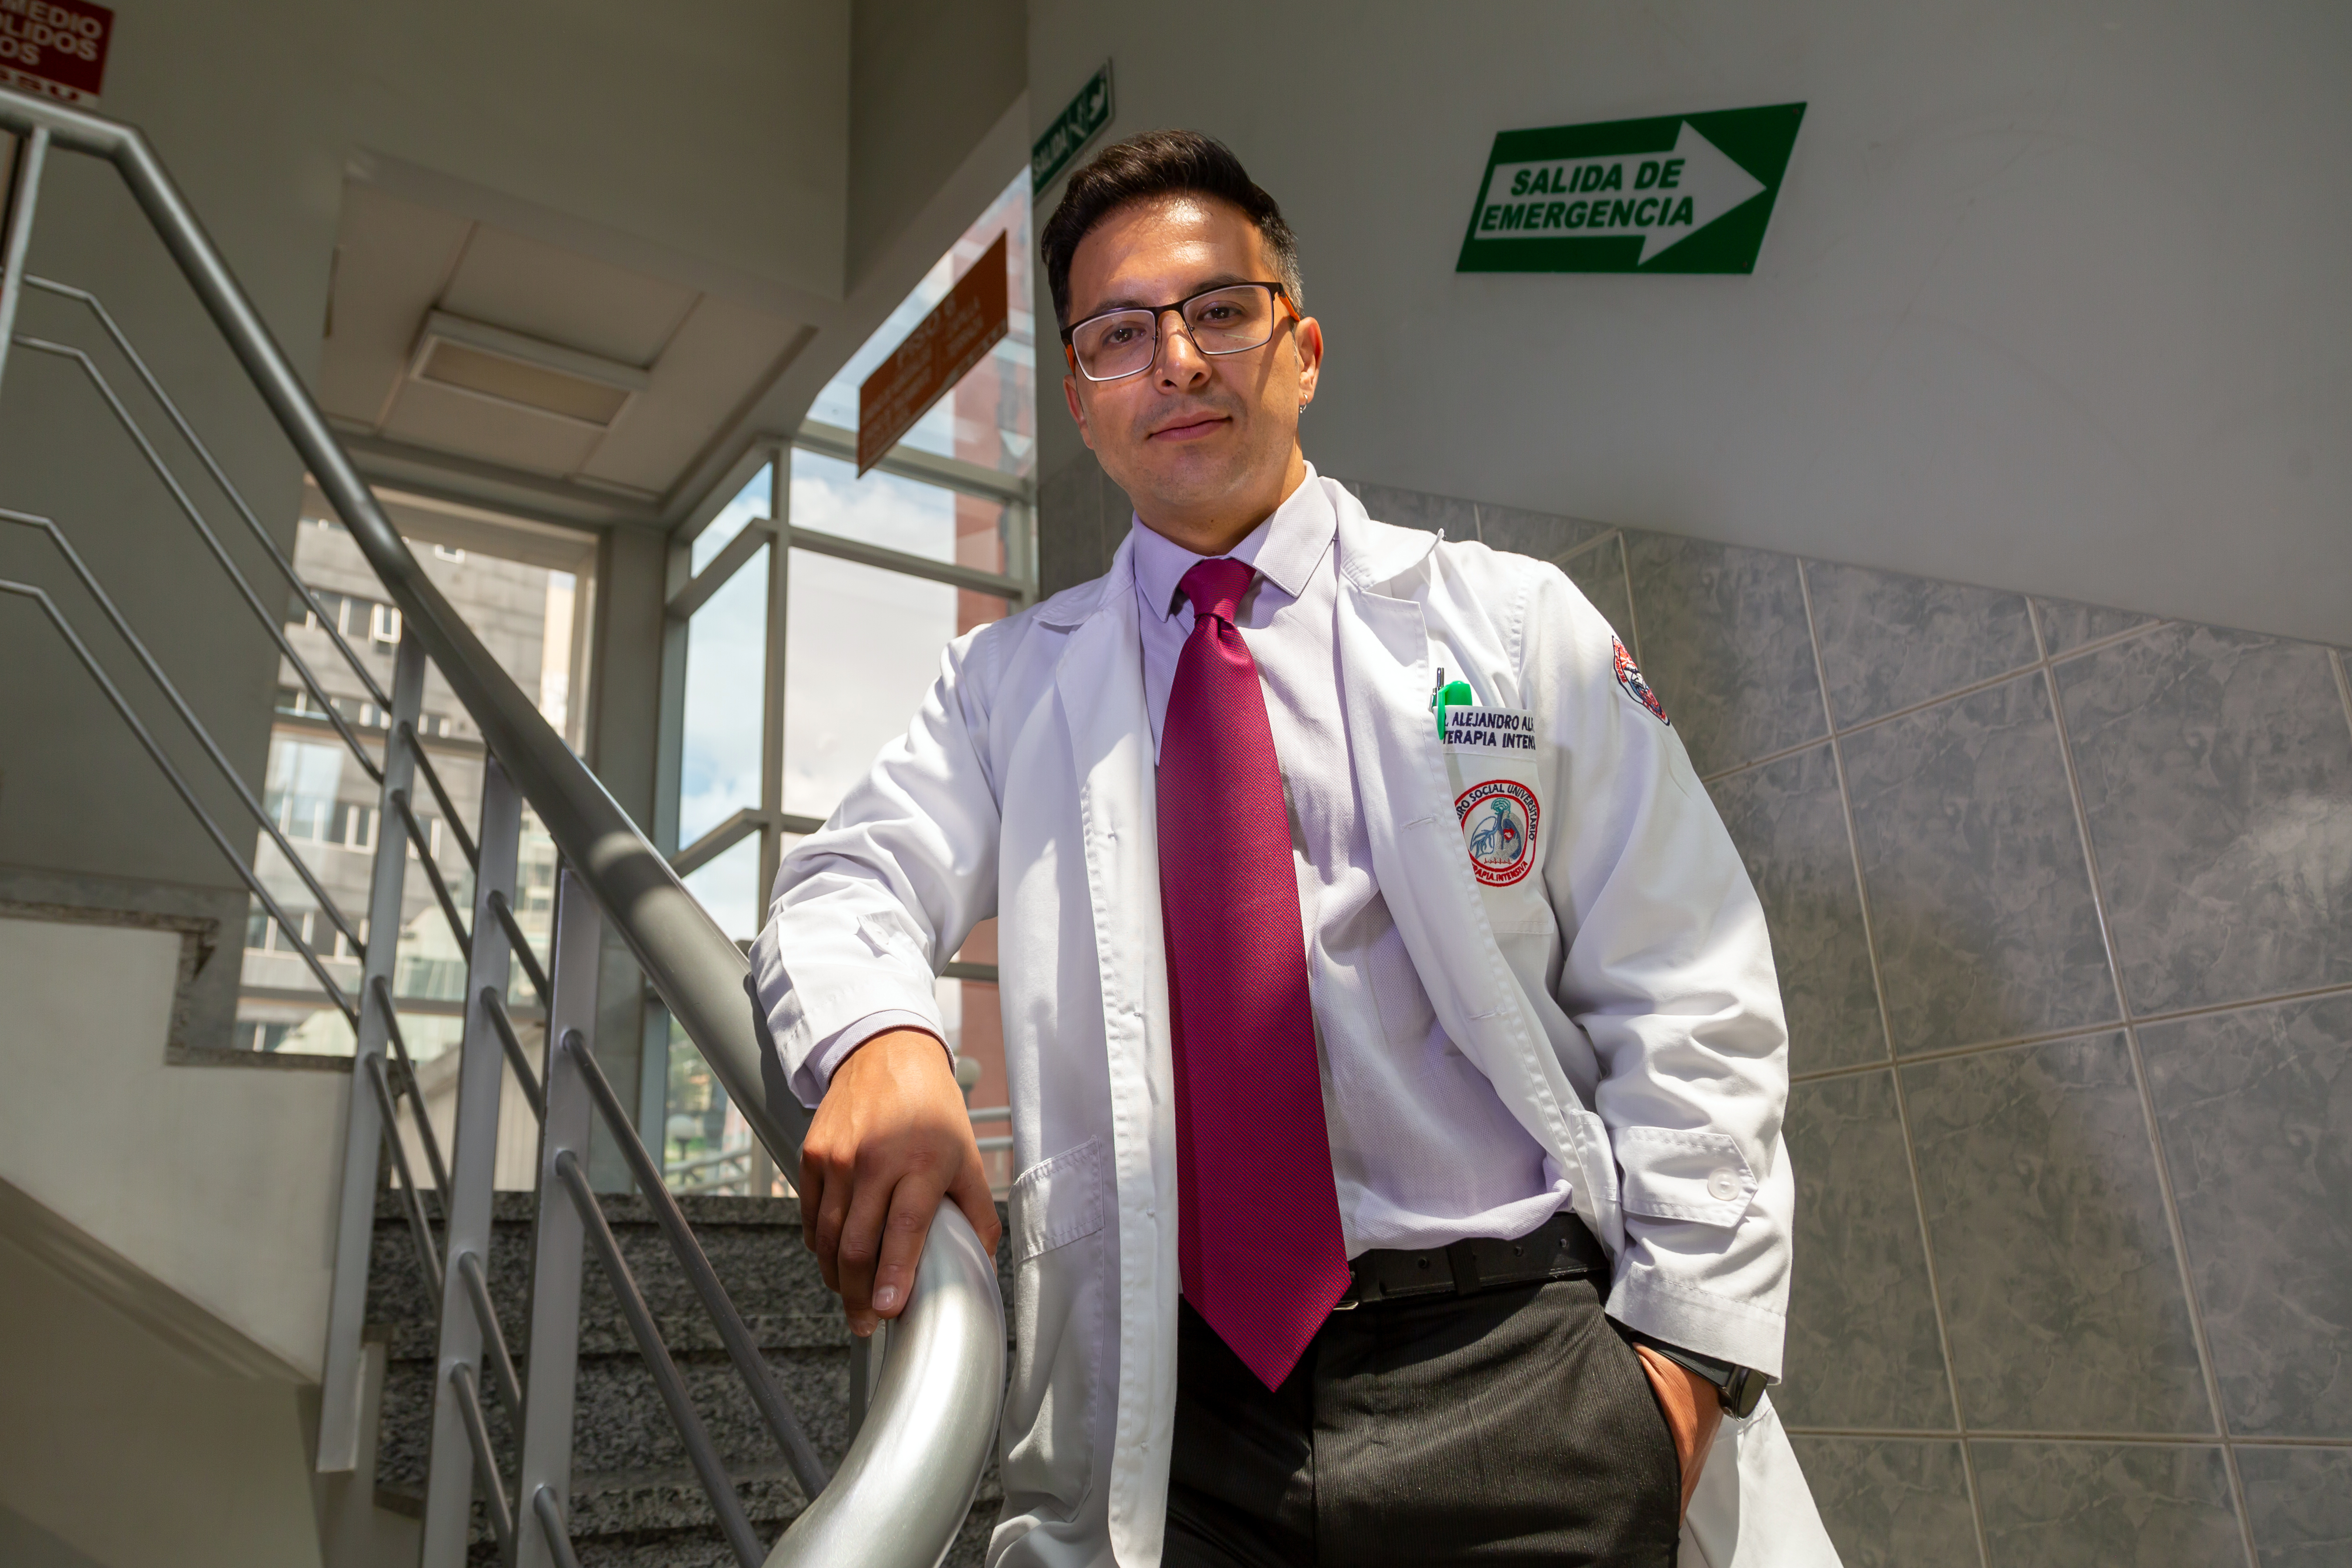 Marcelo Alfaro in seinem Arztkittel im Treppenhaus des Universitätsspital von La Paz, Bolivien.